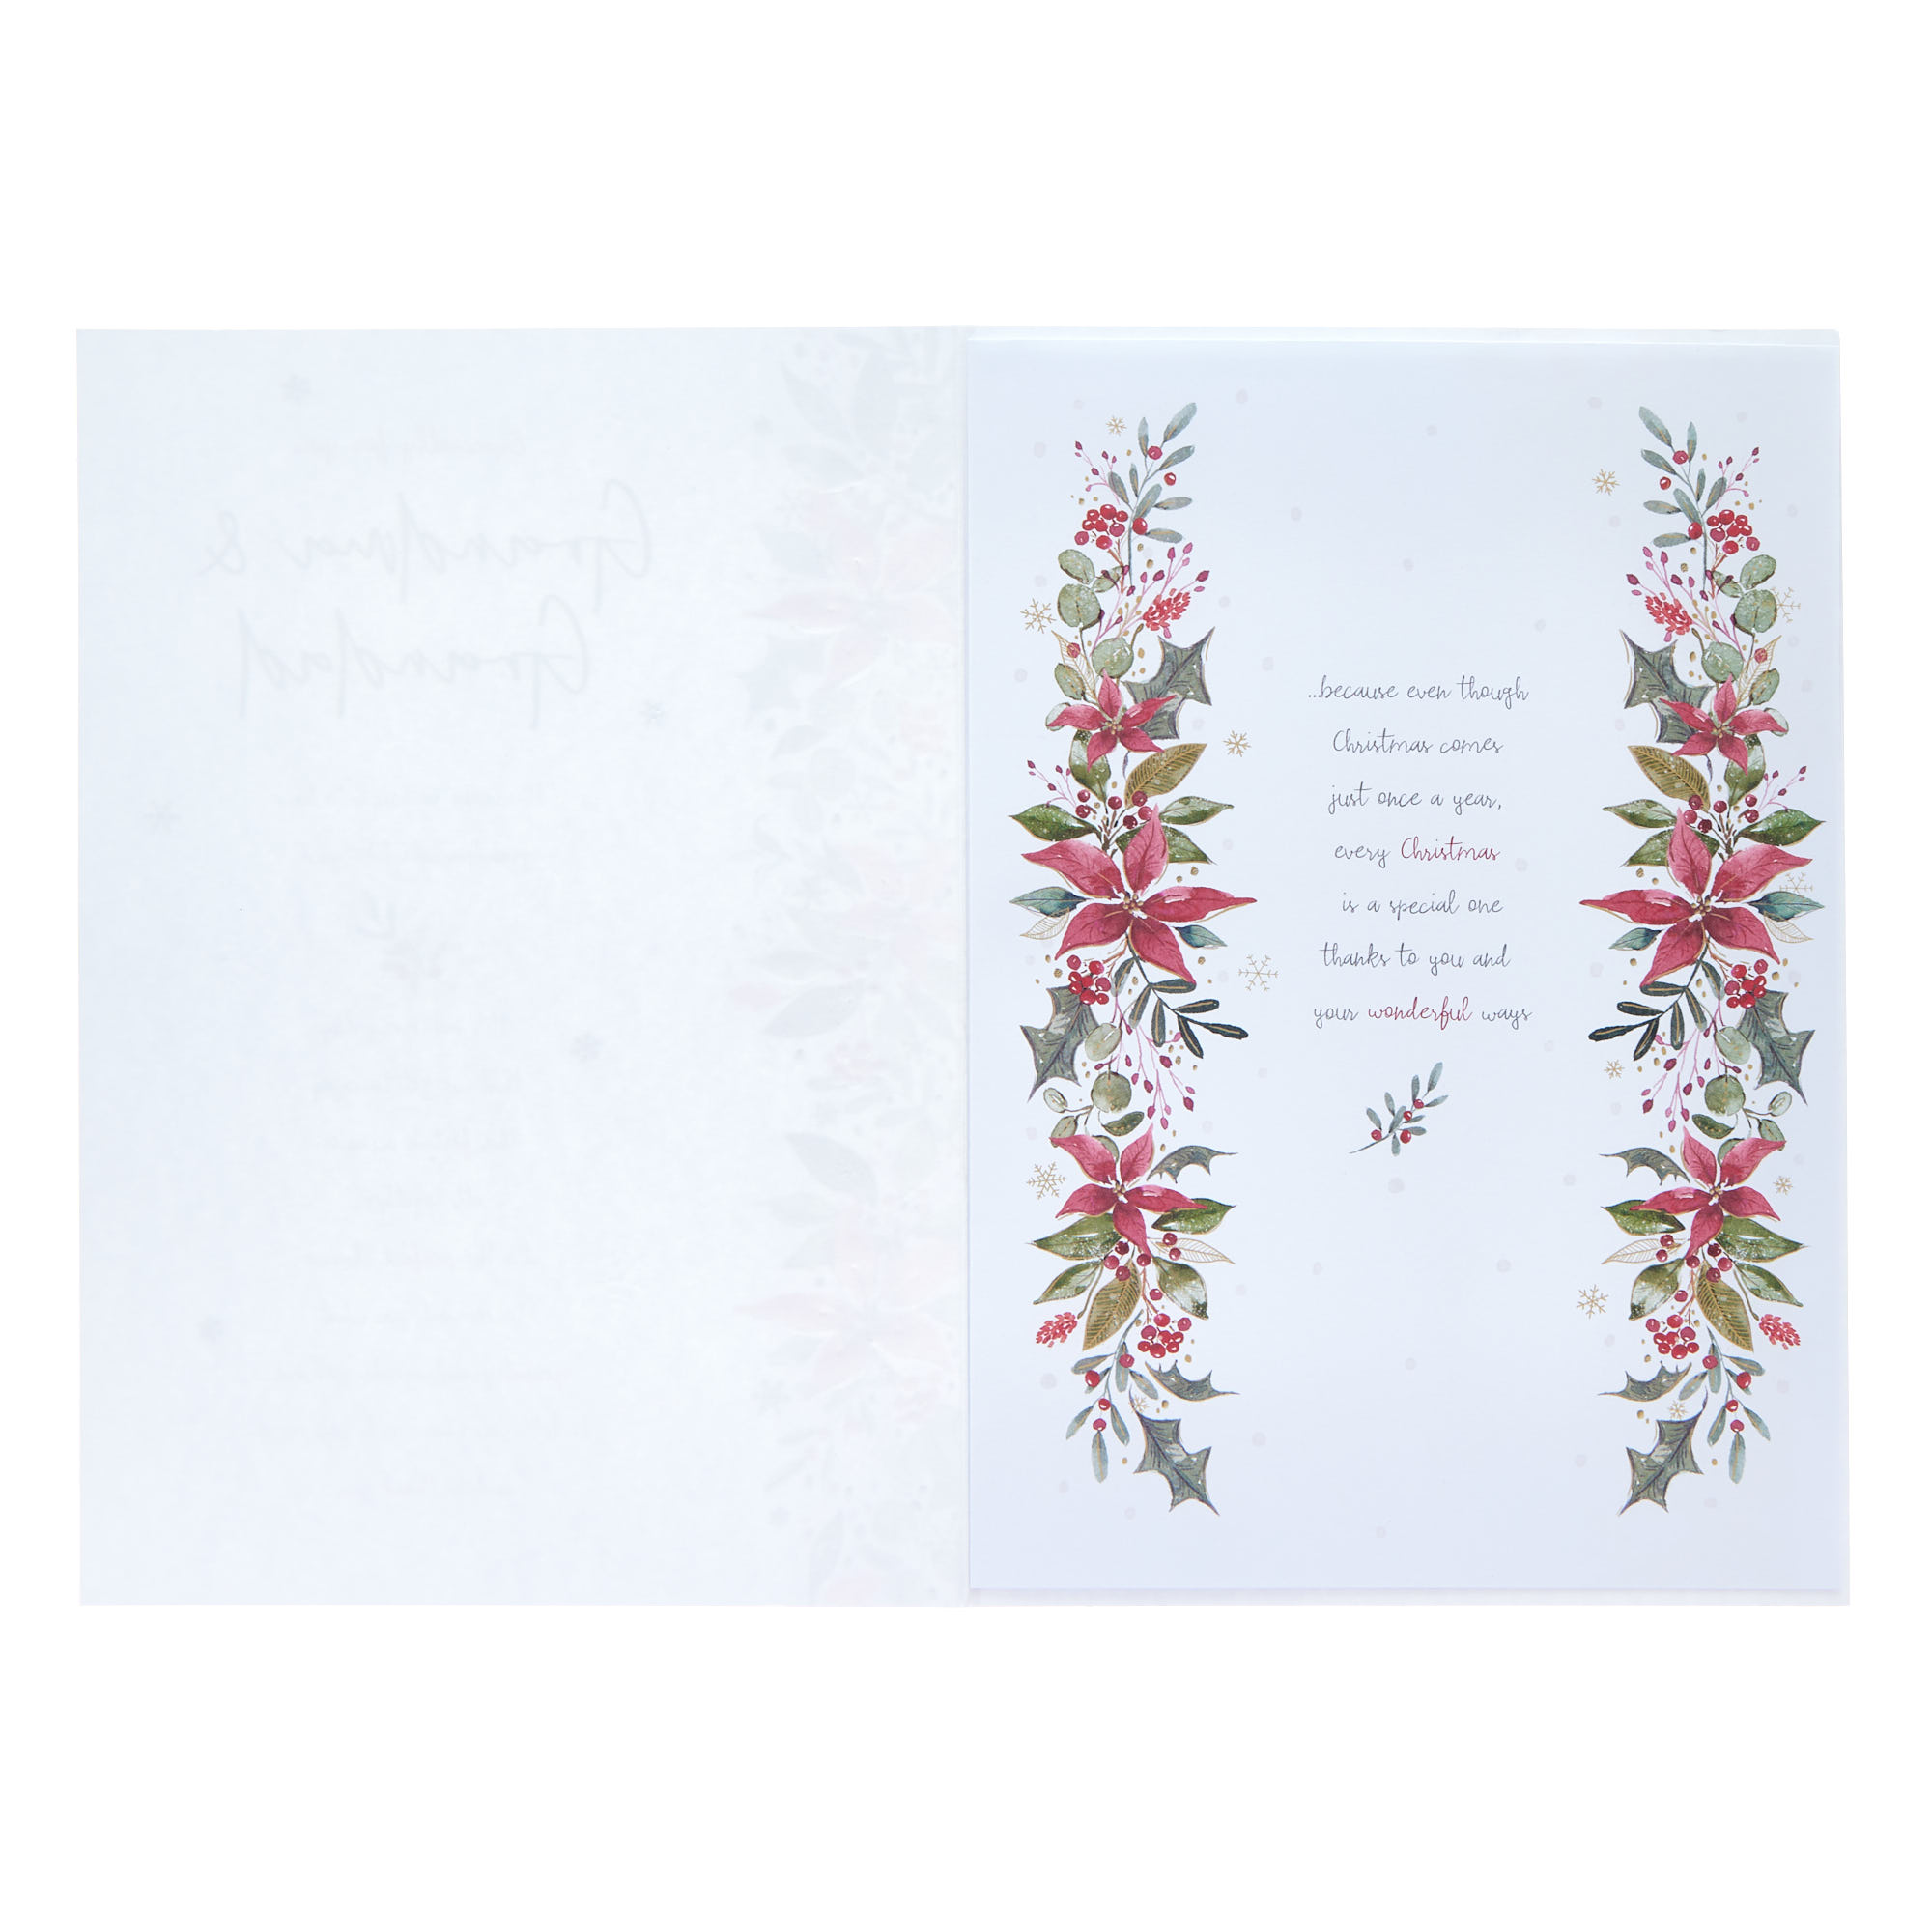 Grandma & Grandad Verse & Poinsettia Christmas Card